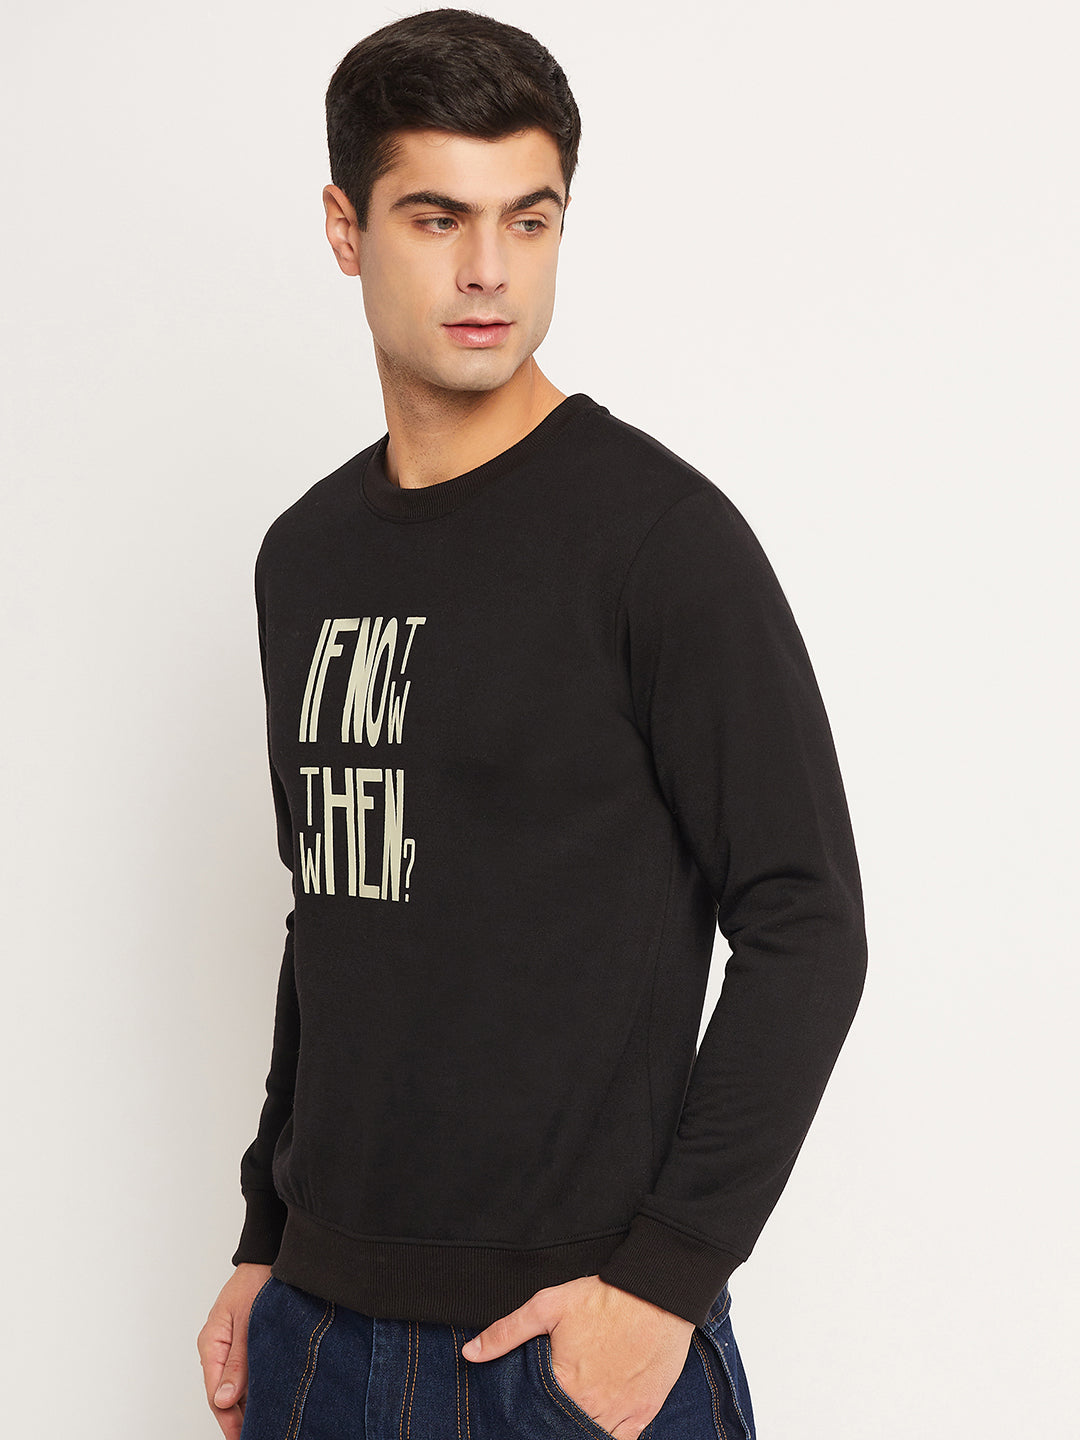 Men's Sweatshirt Black